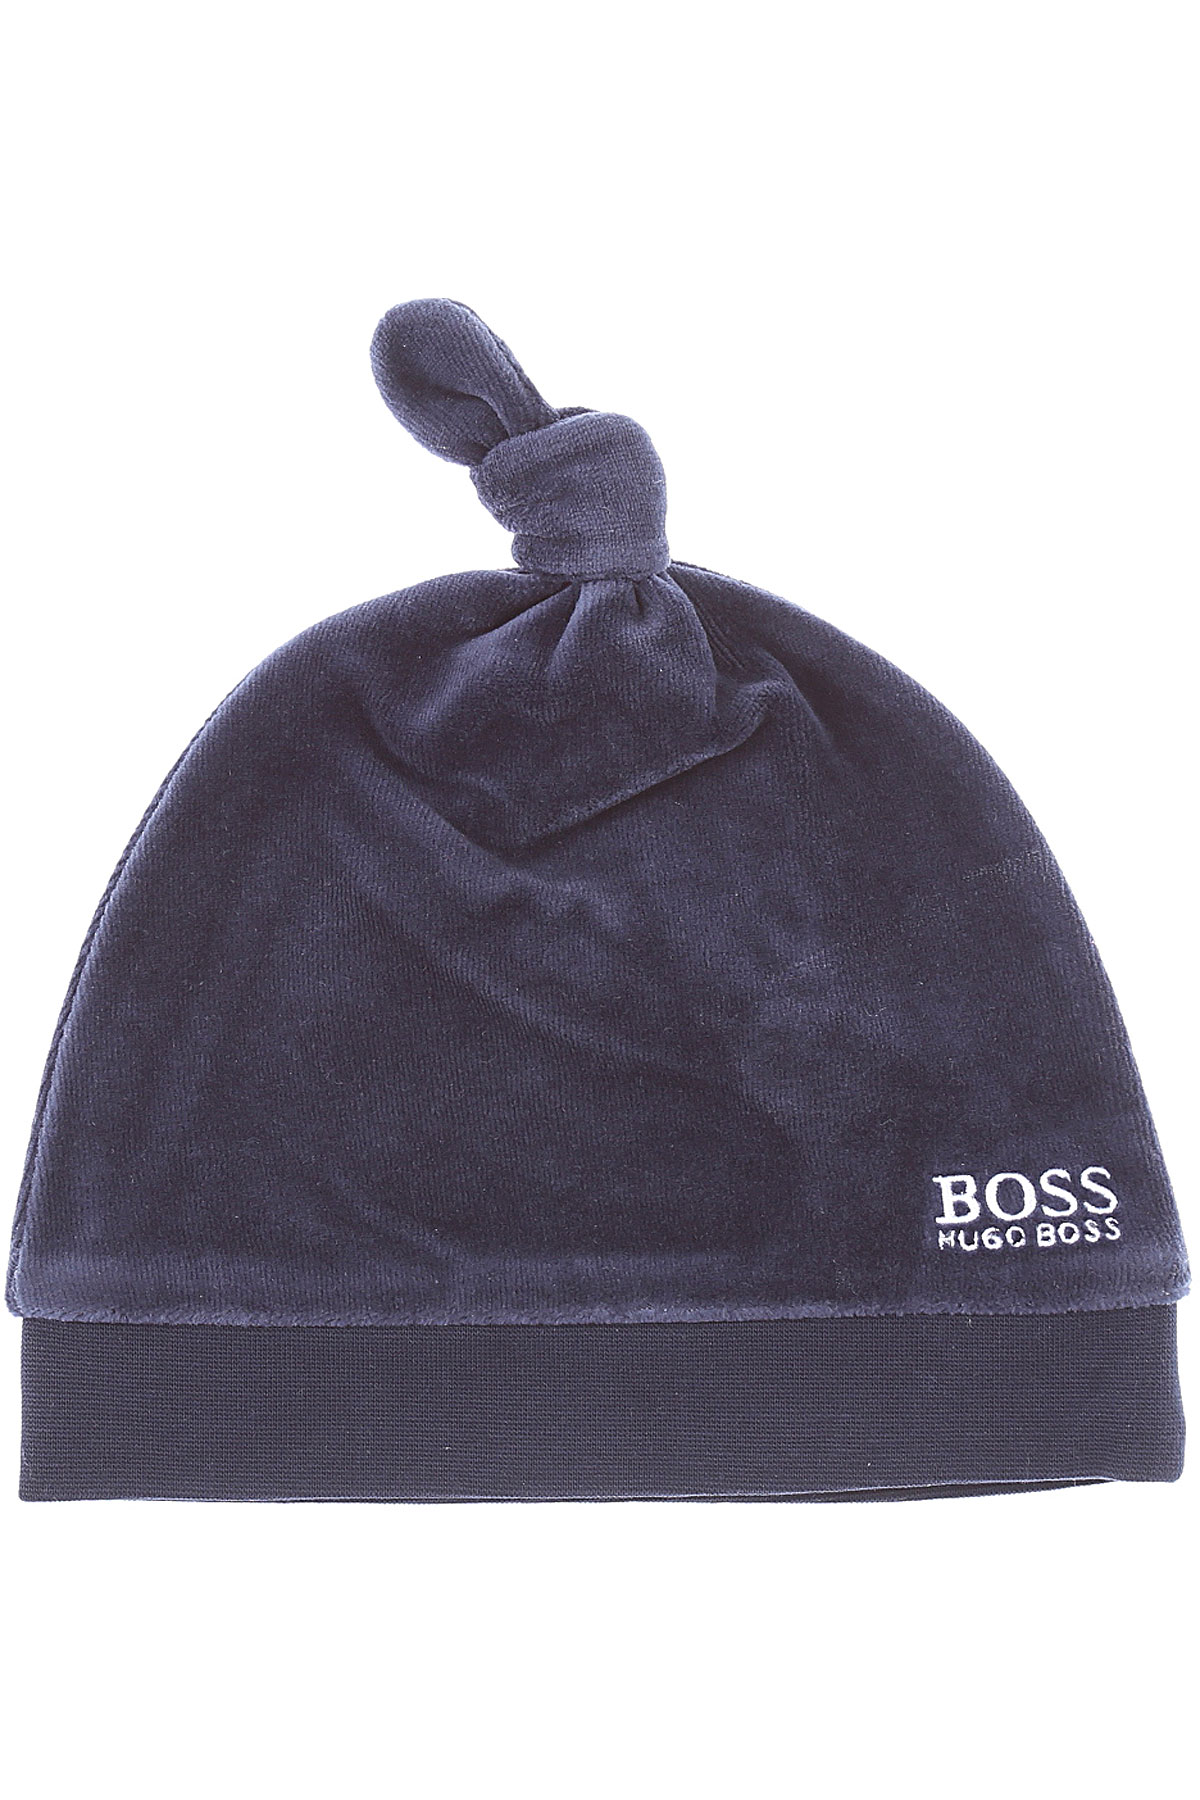 Hugo Boss Baby Hut für Jungen Günstig im Sale, Marine blau, Baumwolle, 2017, 44 46 48